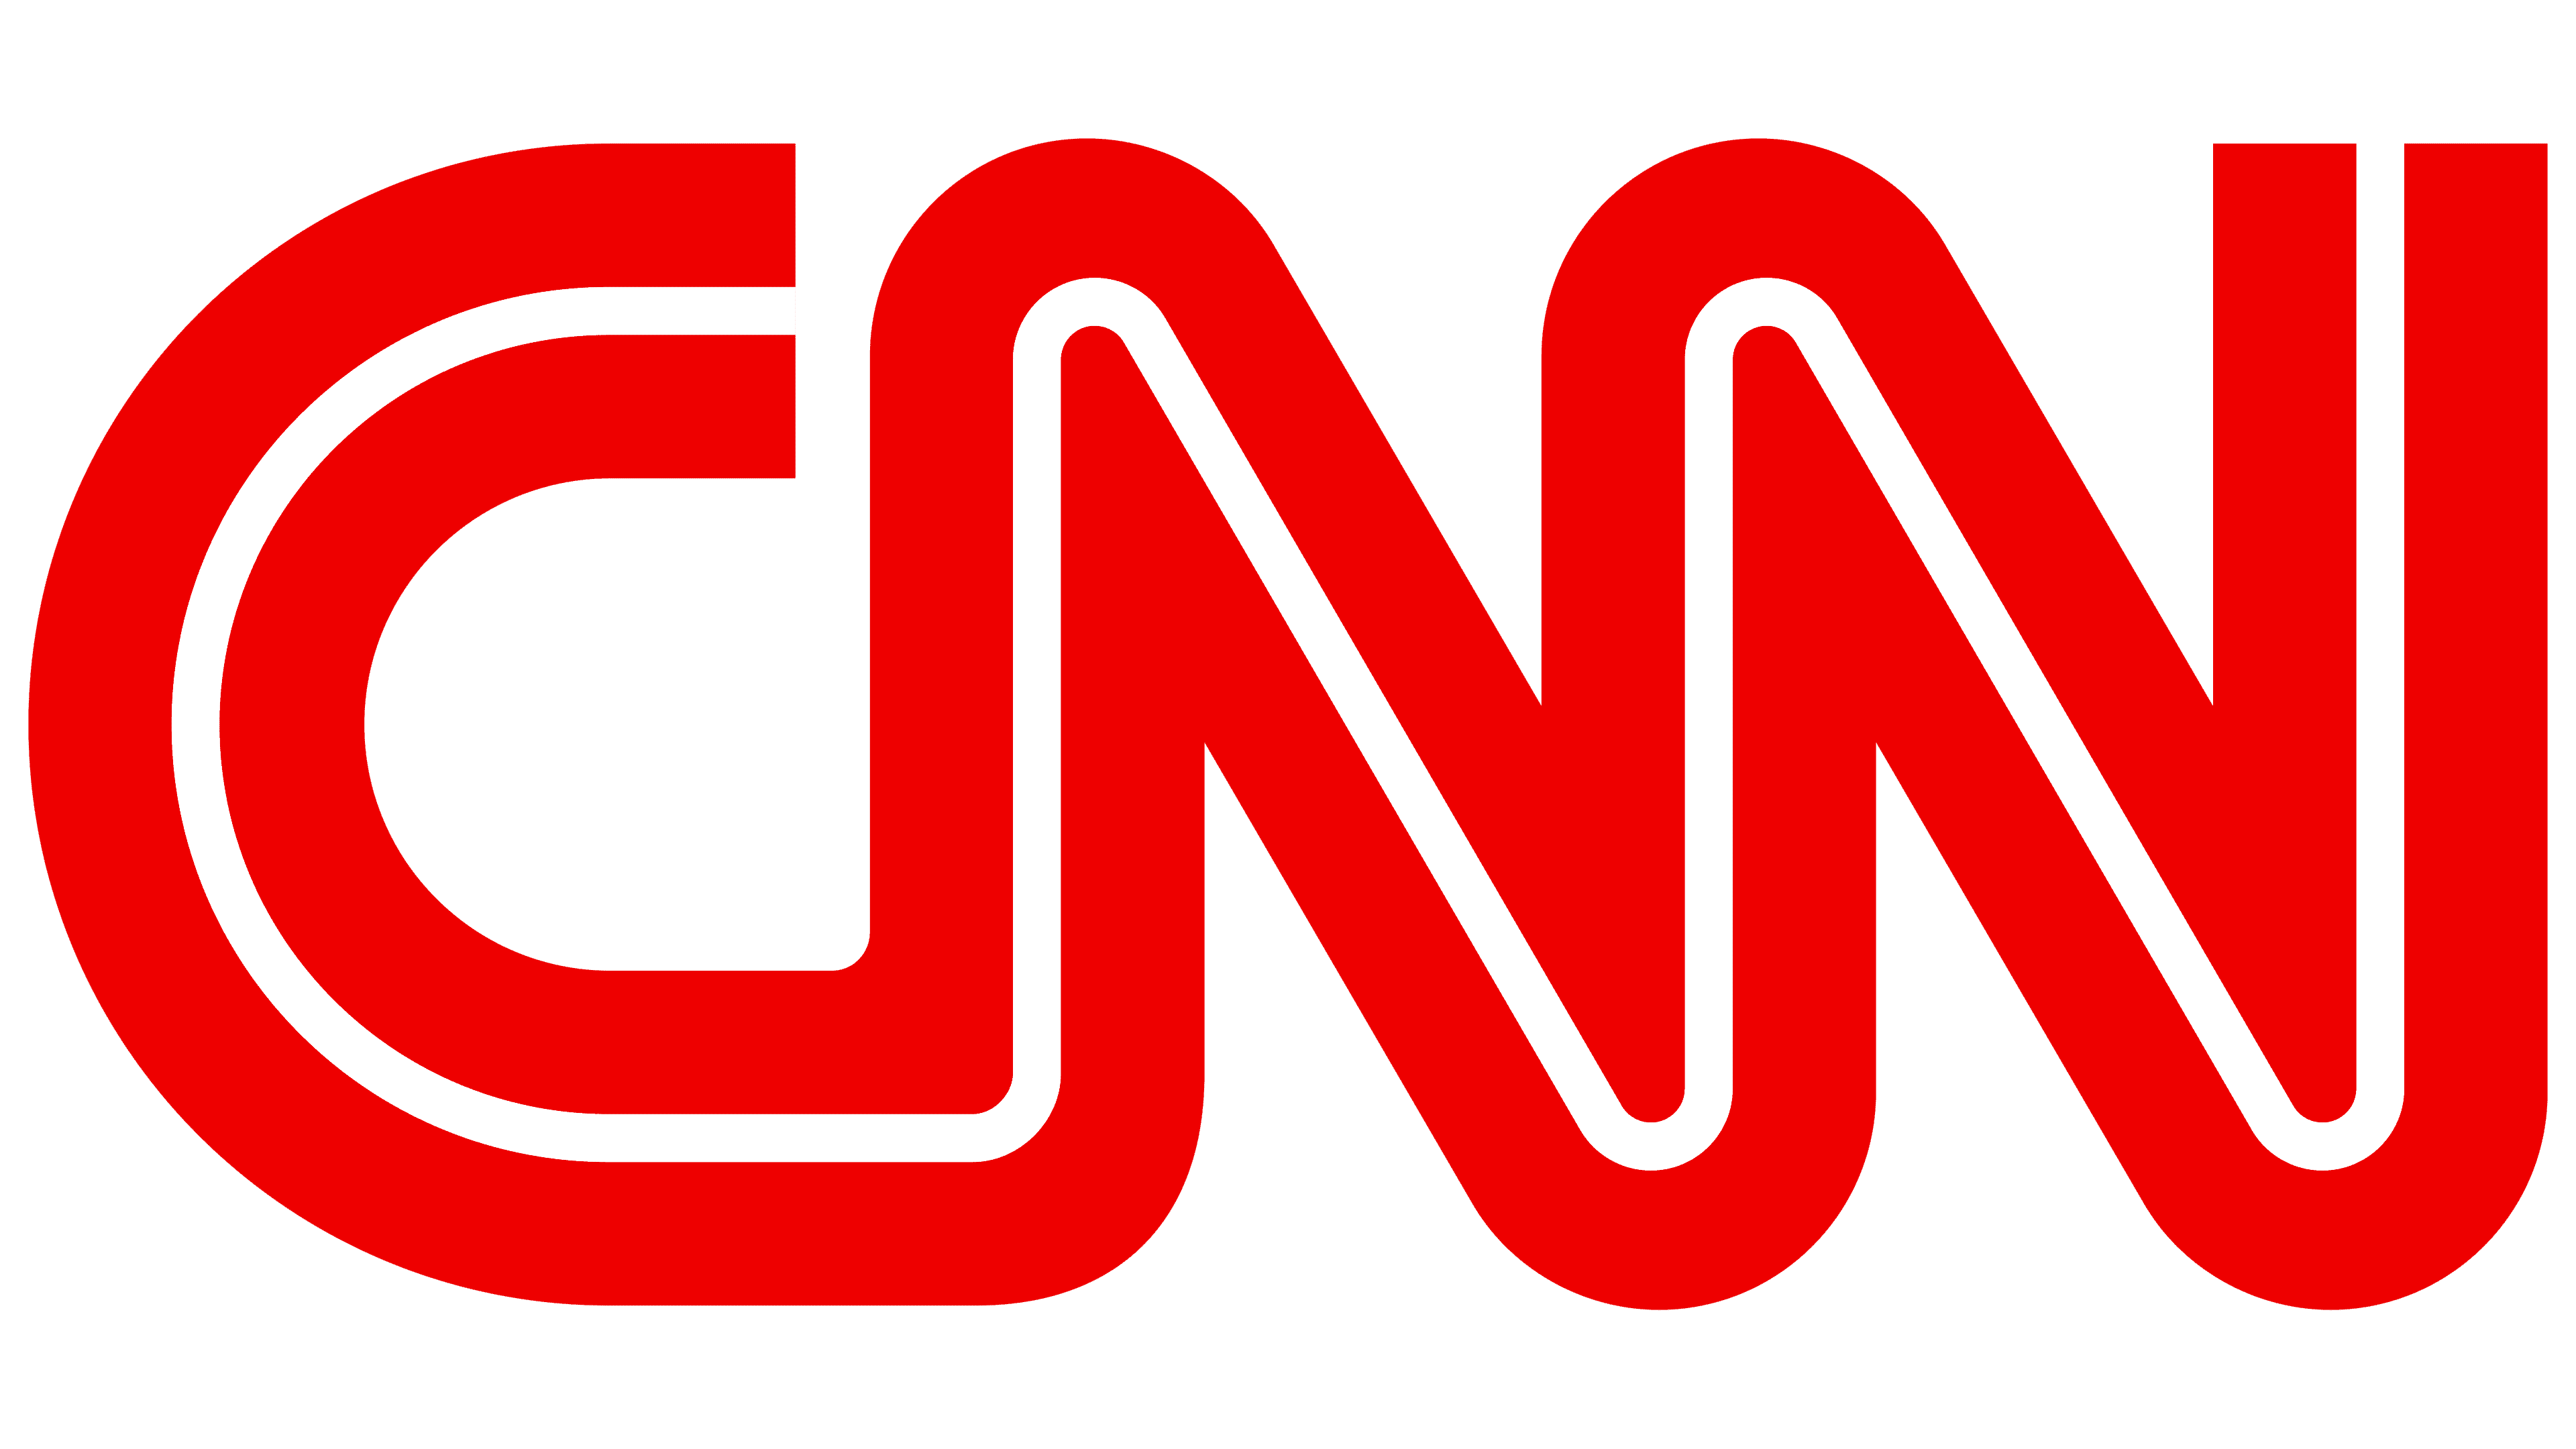 Logotipo de la CNN Logo